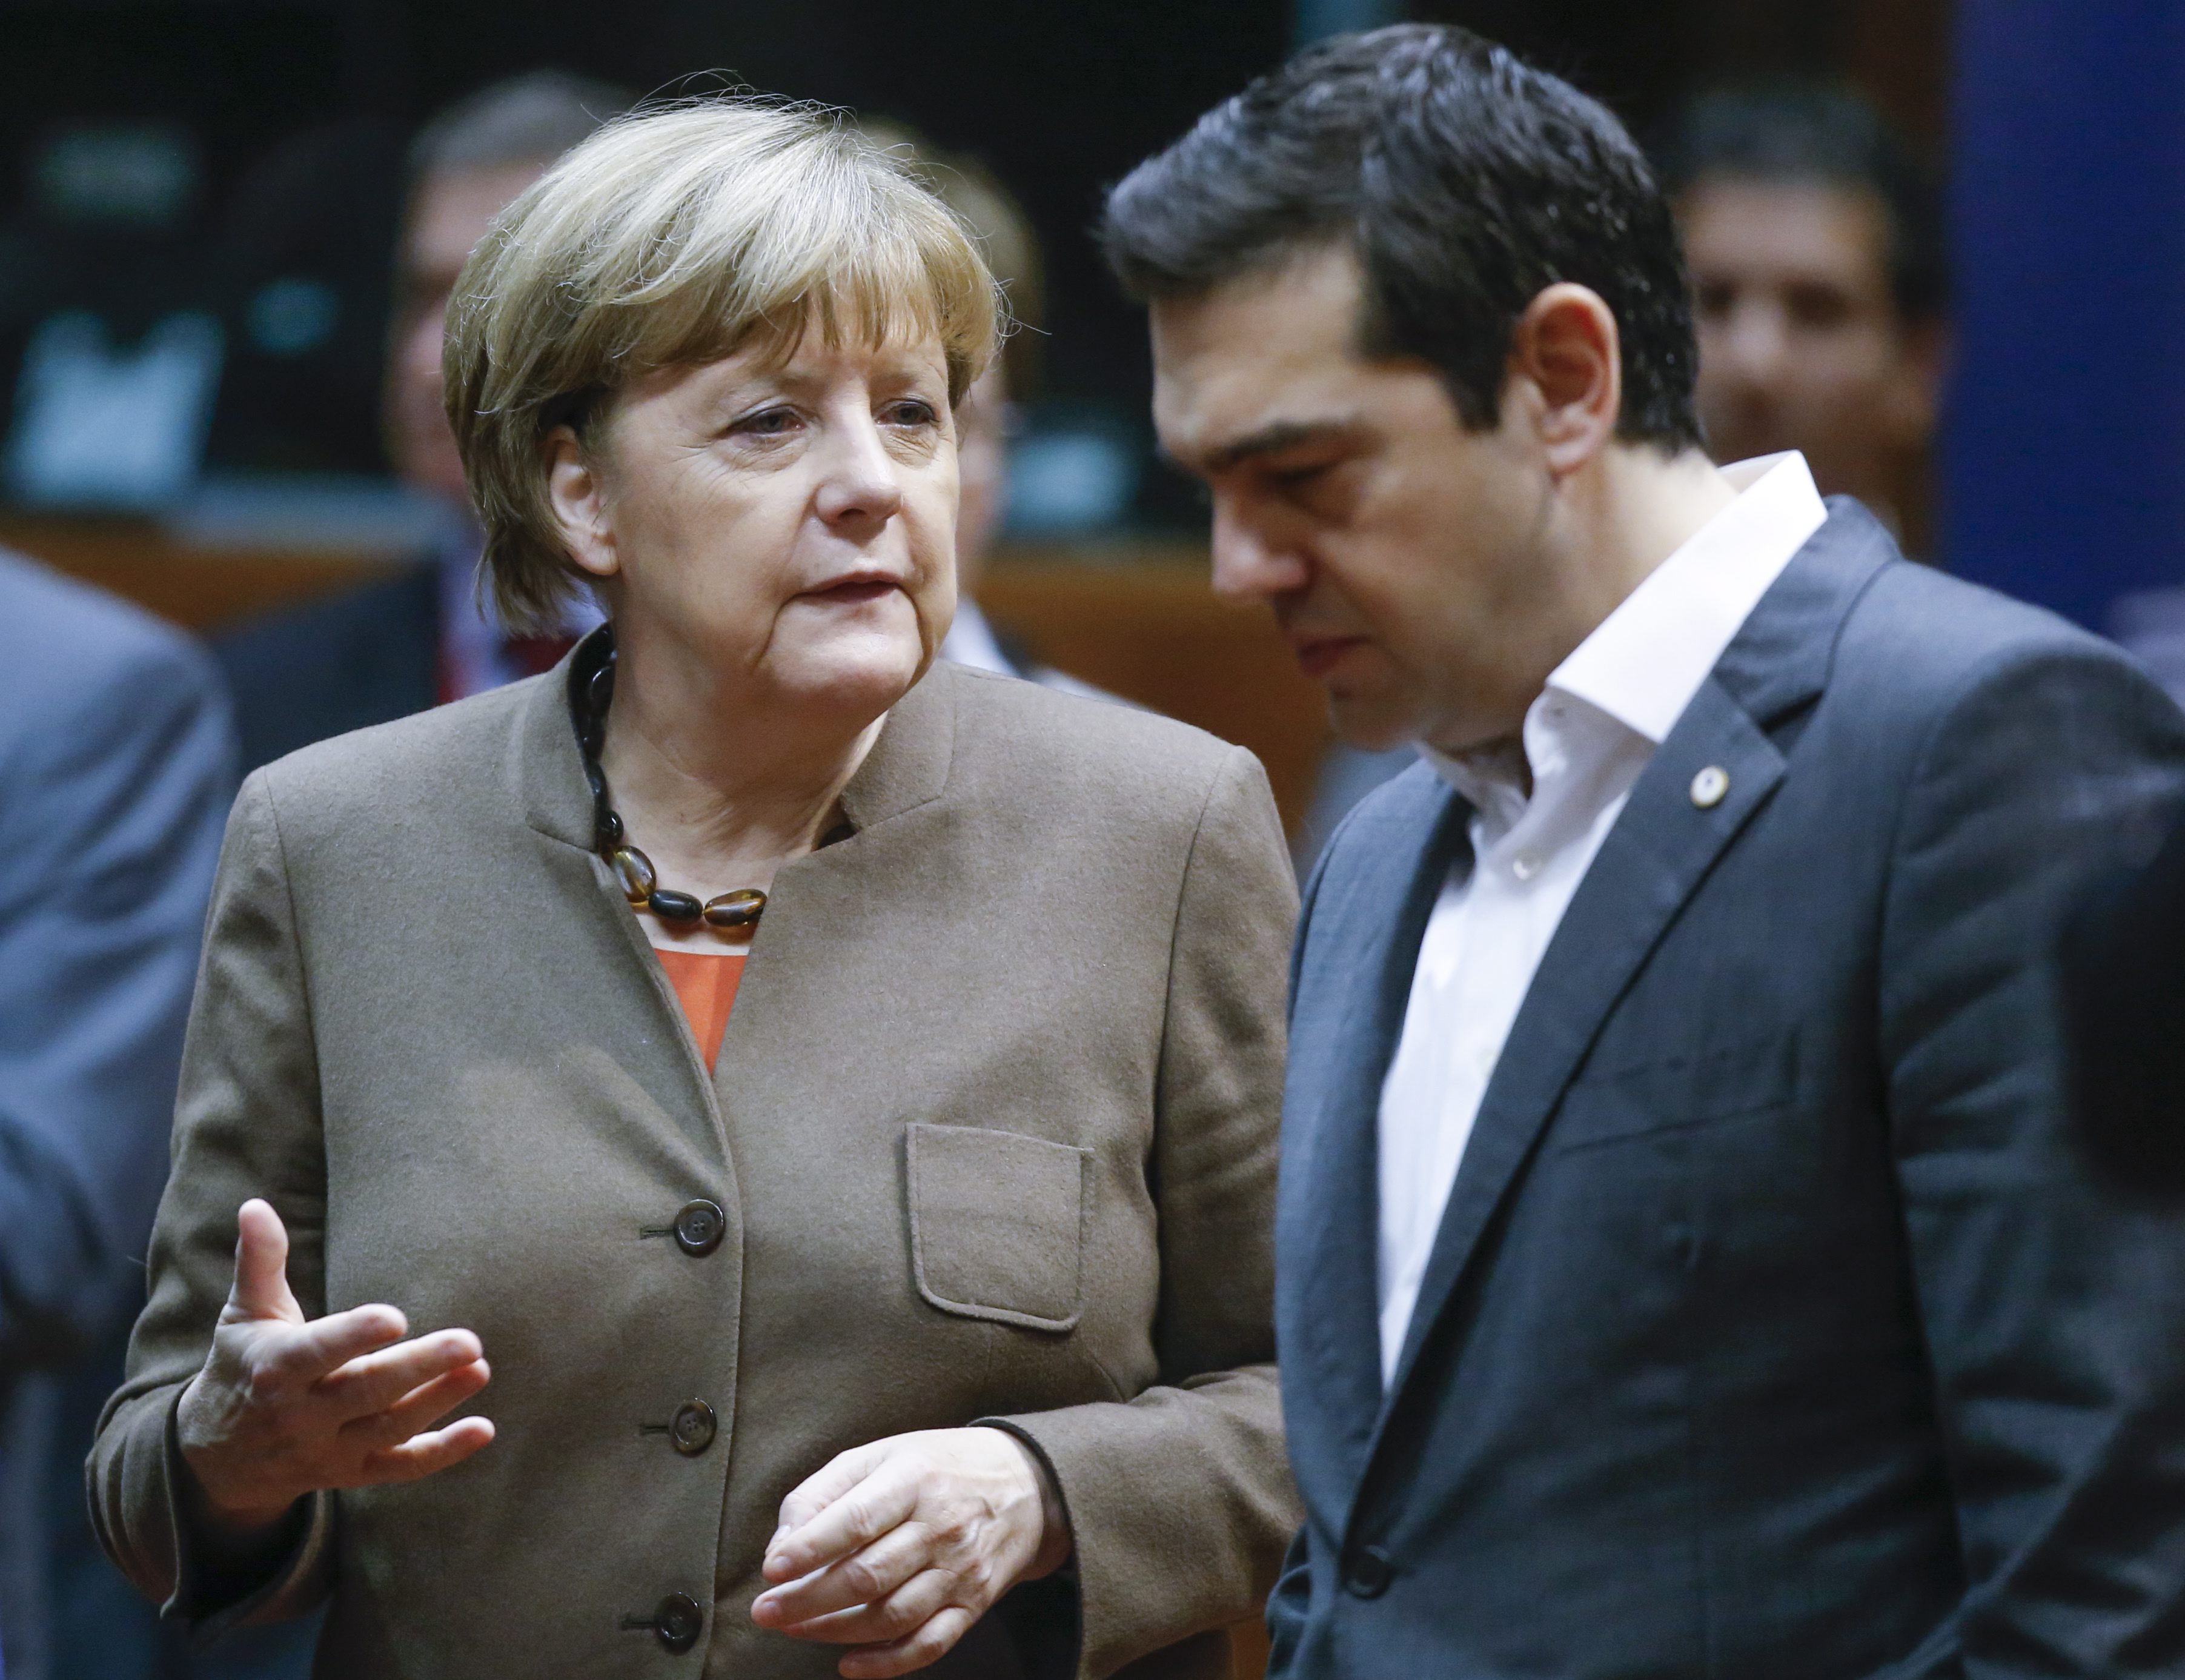 Οι απανωτές τουρκικές προκλήσεις έφεραν κοντά την γερμανίδα καγκελάριο και τον έλληνα πρωθυπουργό